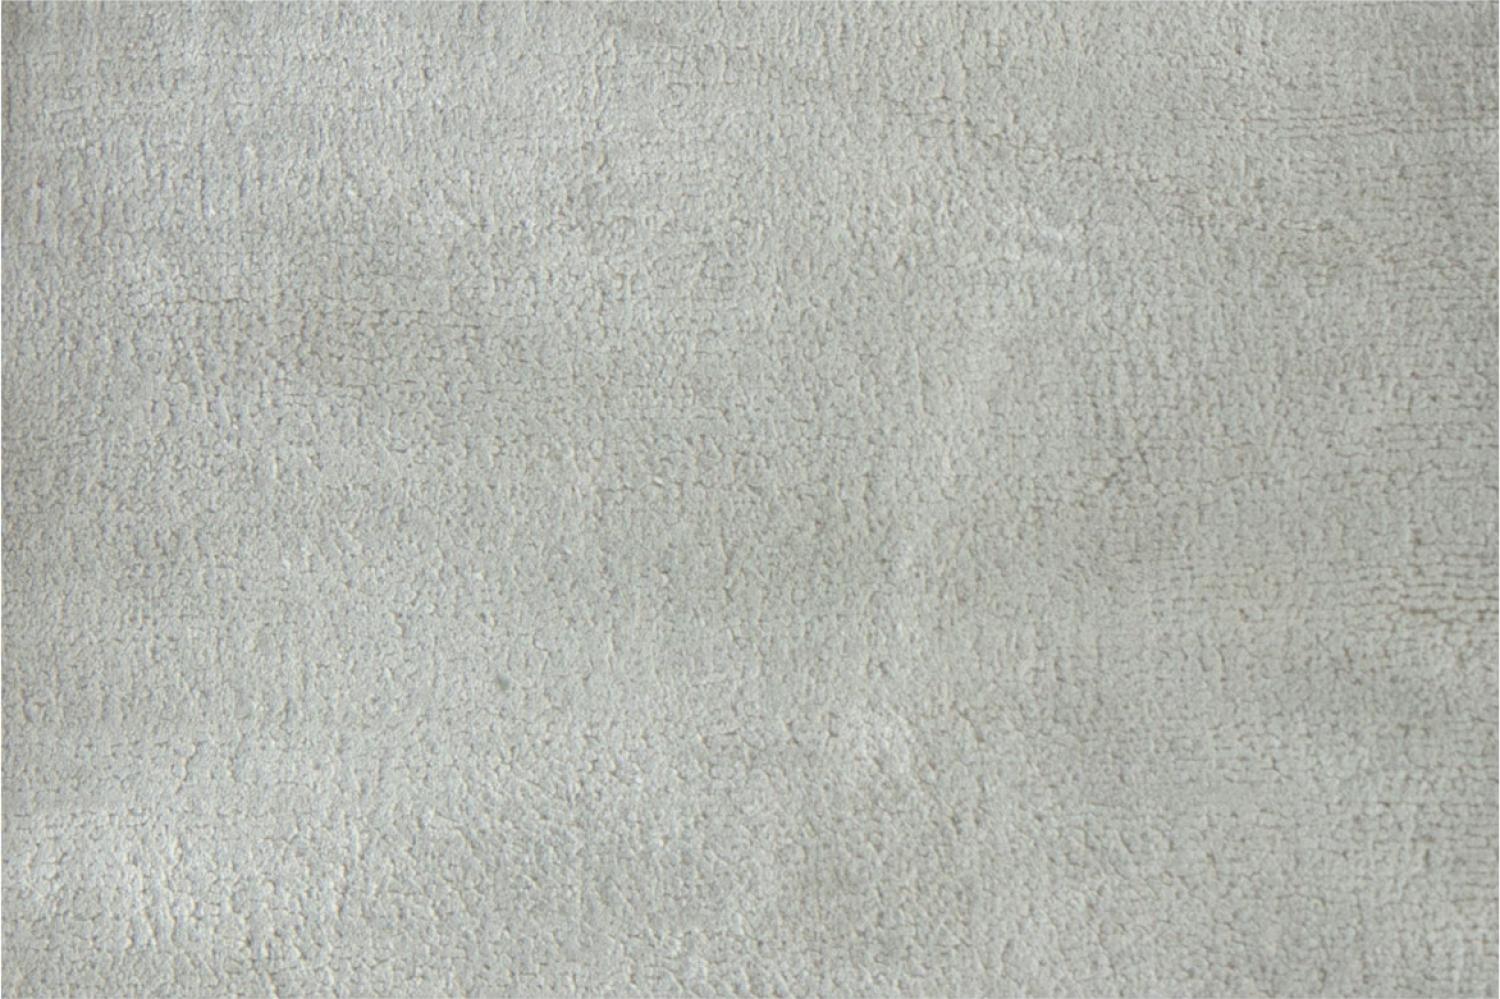 Casa Padrino Luxus Wohnzimmer Teppich Silber-Beige 300 x 400 cm - Rechteckiger Viskose Teppich - Luxus Qualität - Wohnzimmer Deko Accessoires Bild 1